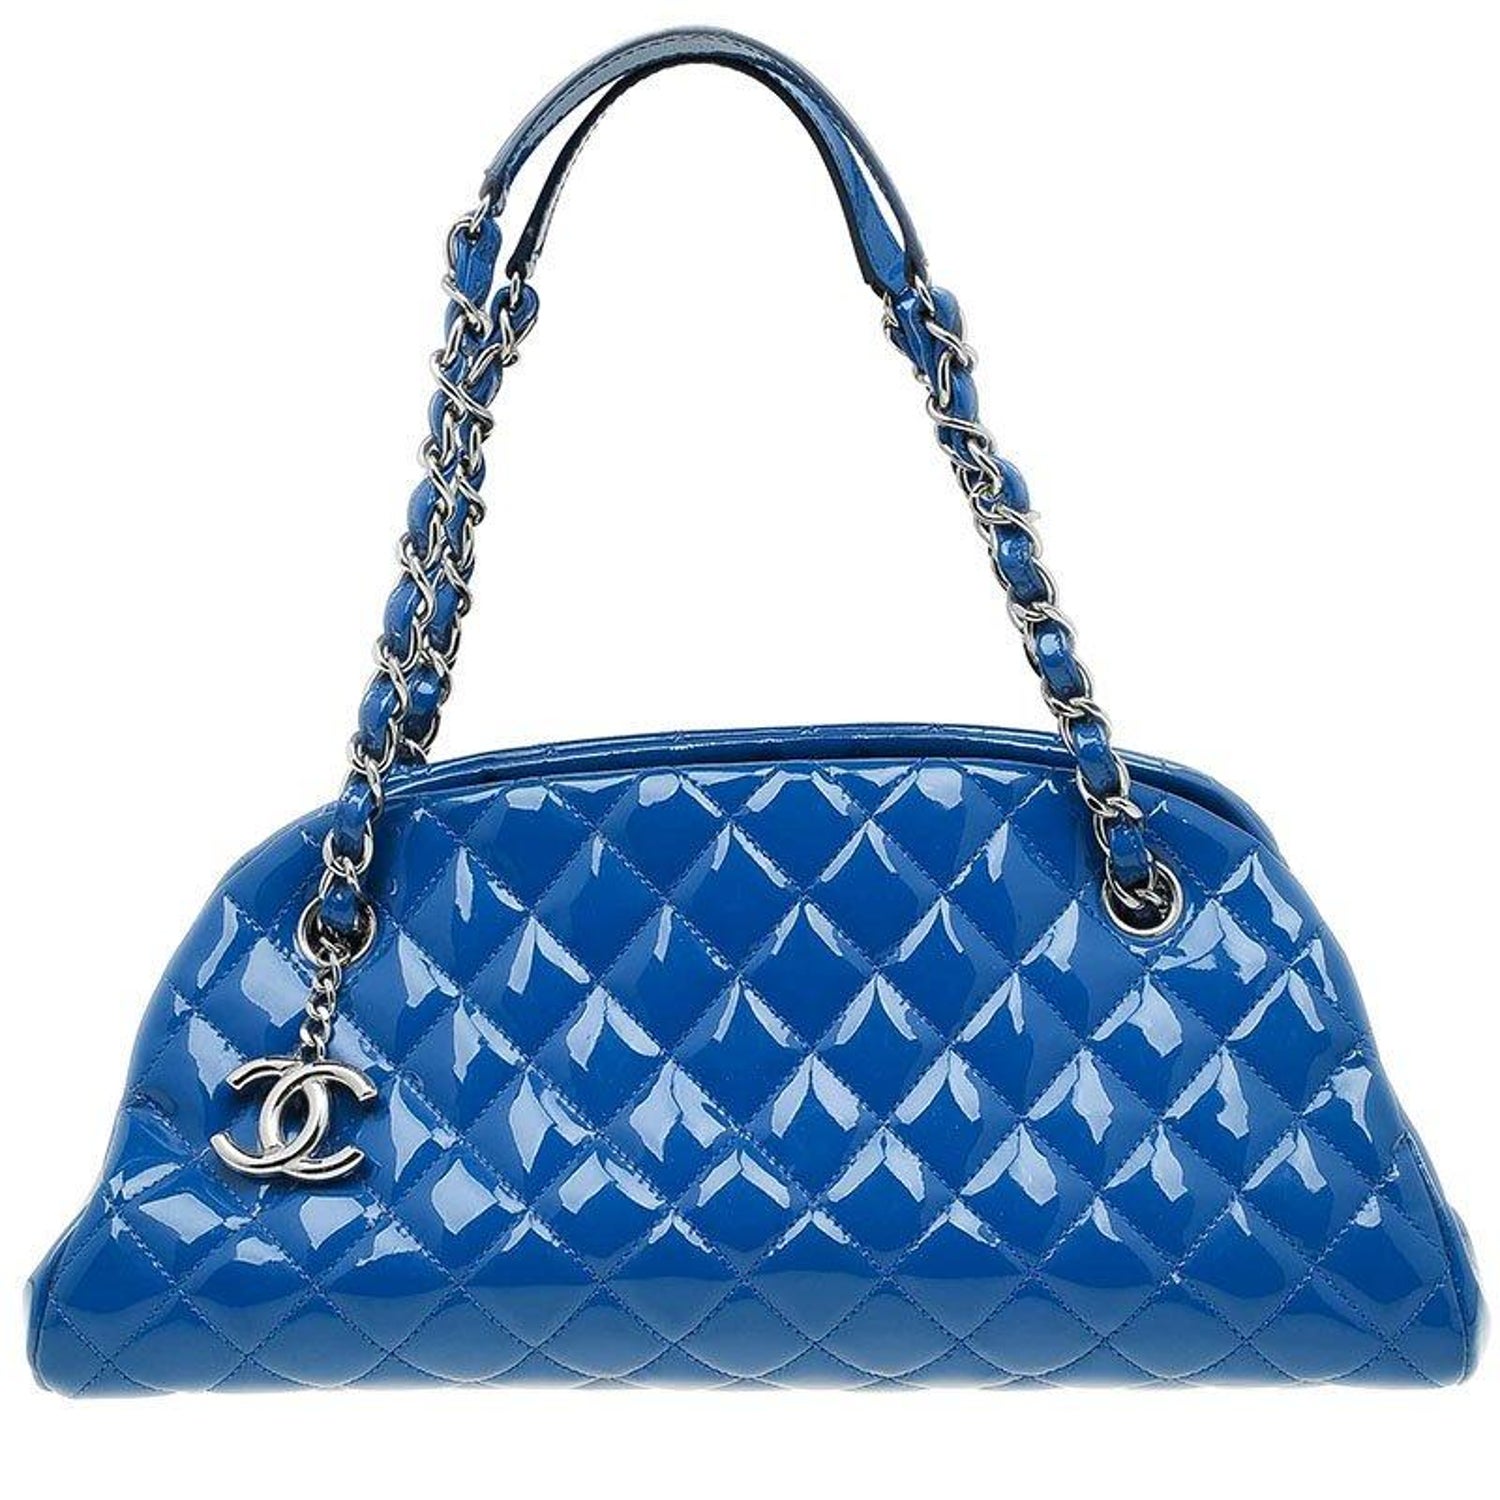 Chanel Mademoiselle Handbag 403909, AmaflightschoolShops